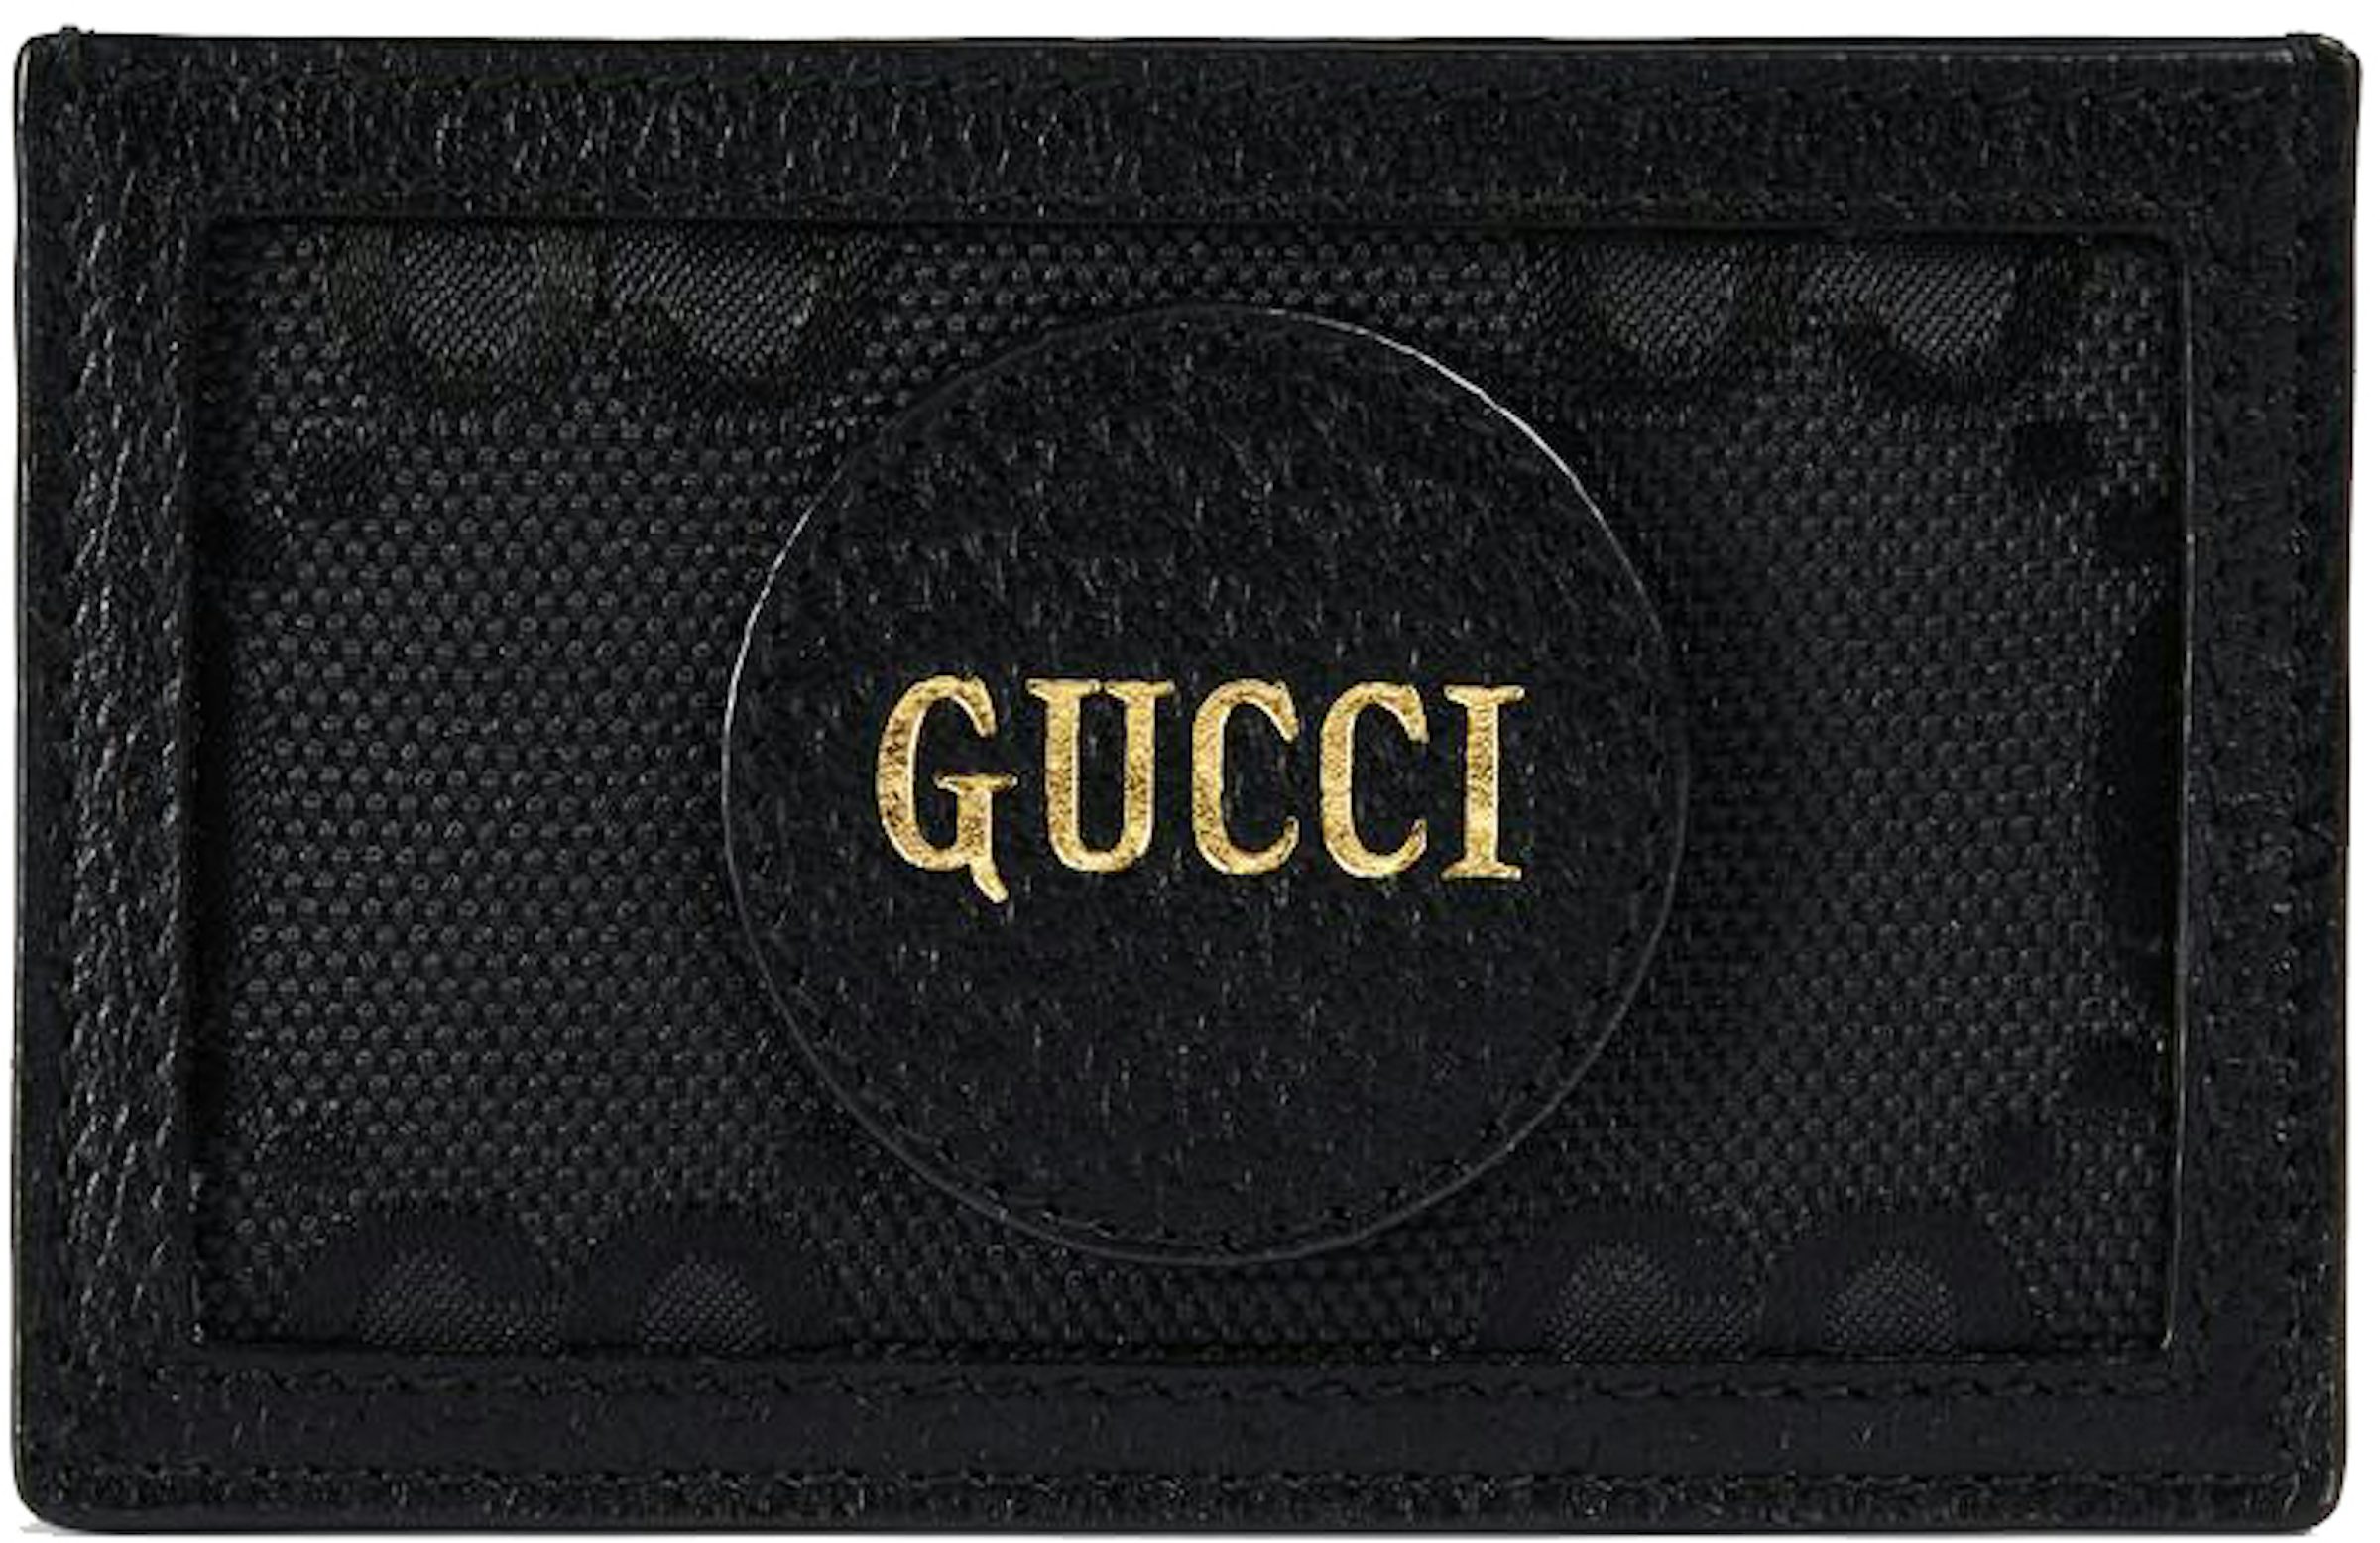 Gucci Credit Card 